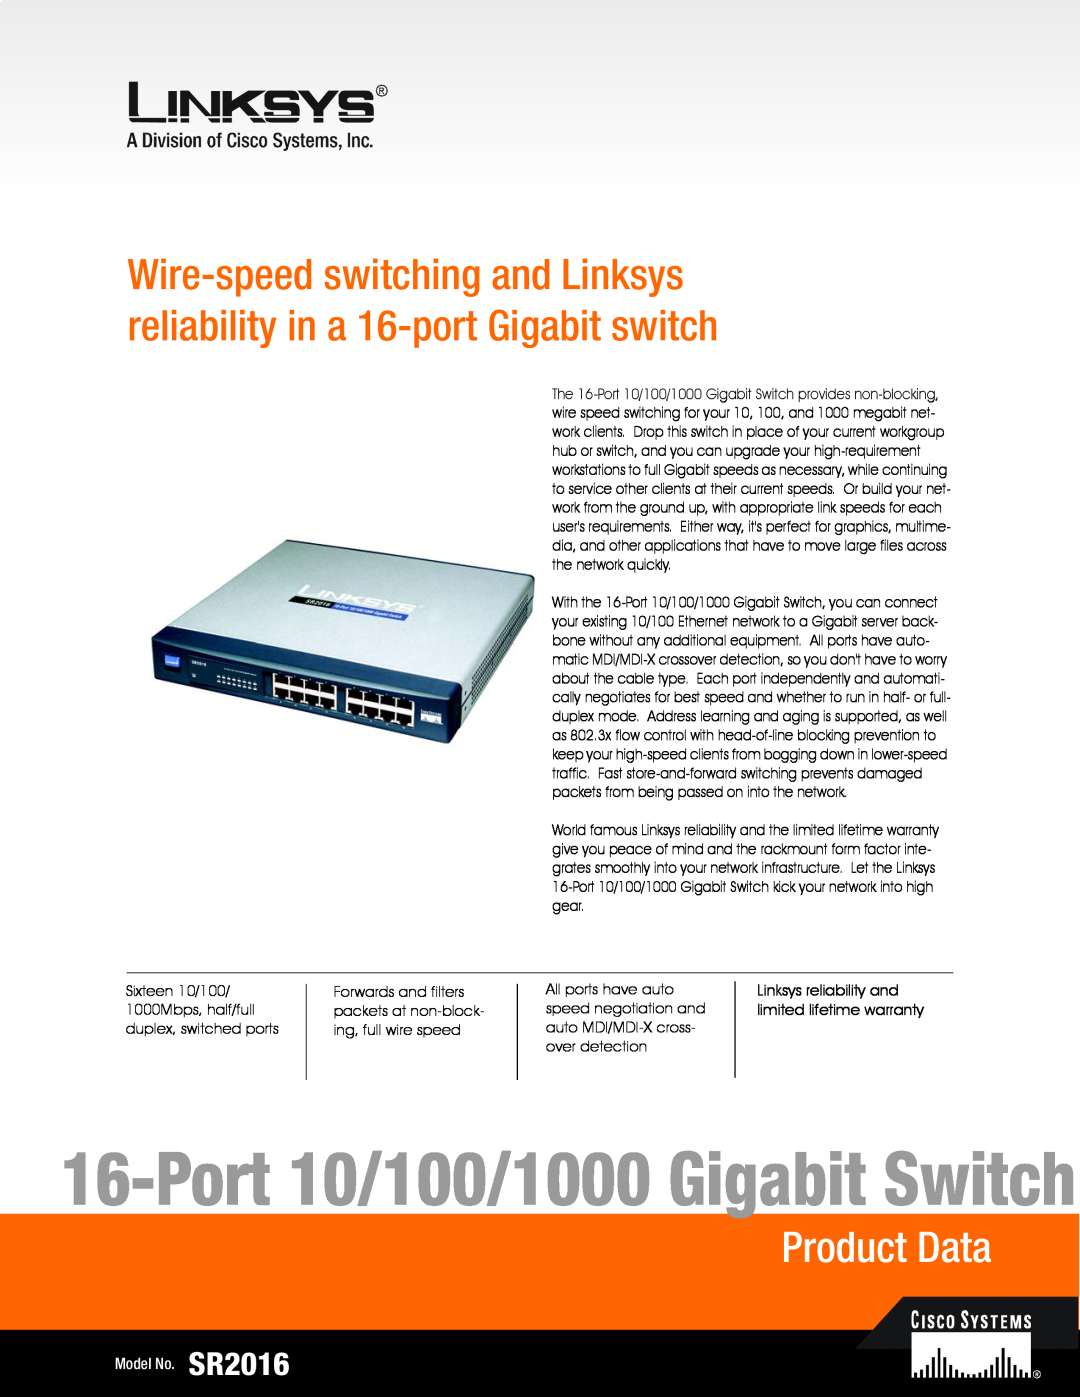 Linksys SR2016 warranty Port 10/100/1000 Gigabit Switch, Product Data, Linksys reliability and limited lifetime warranty 